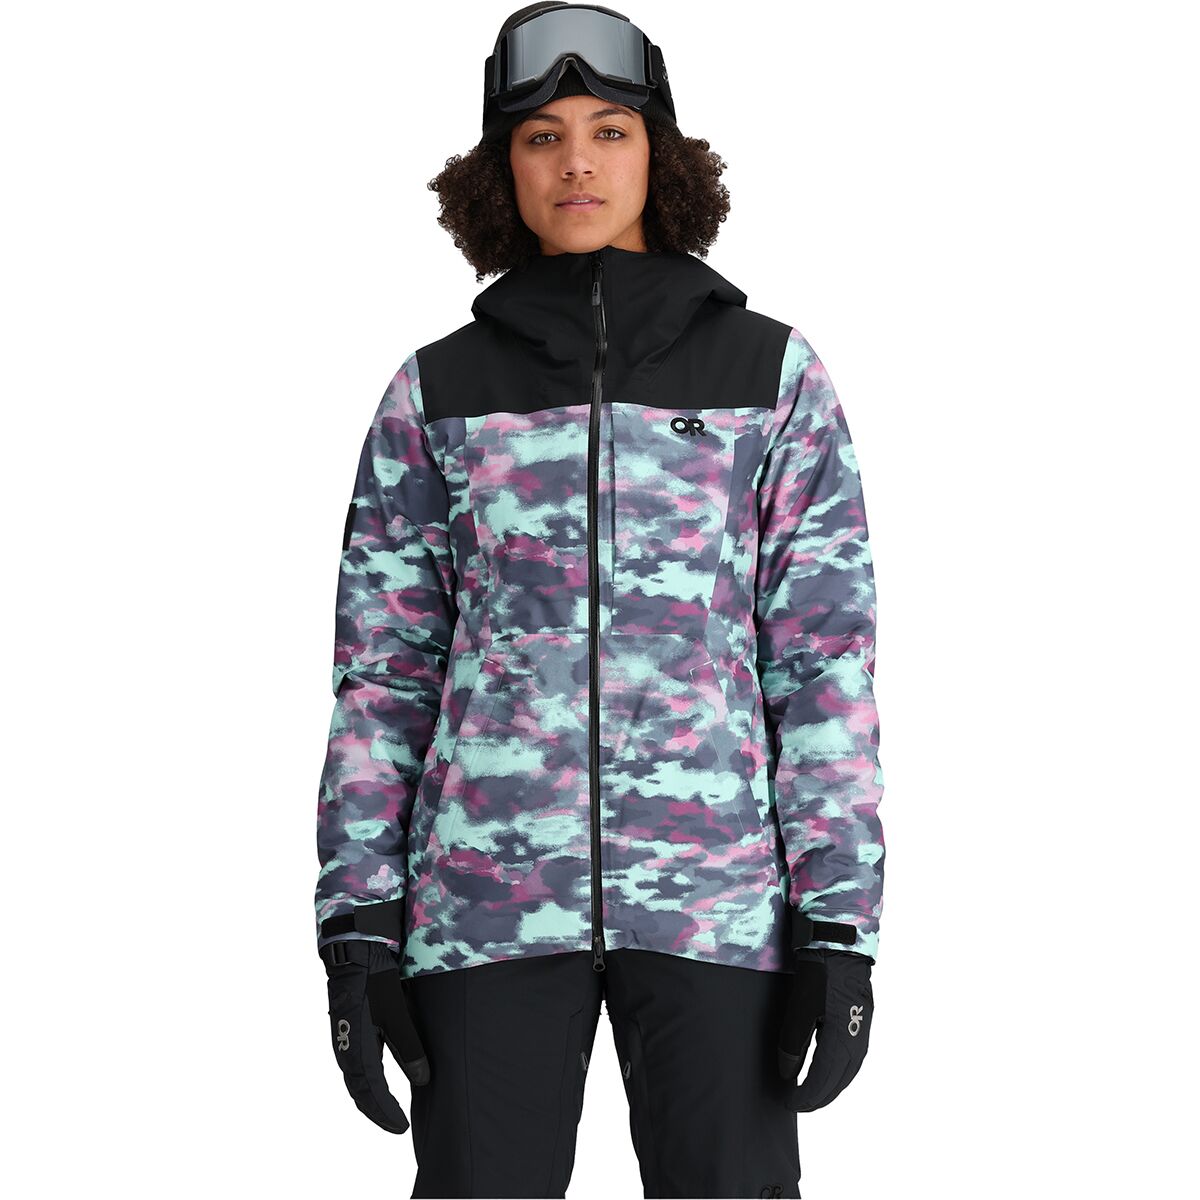 Outdoor Research Snowcrew Jacket - Women's